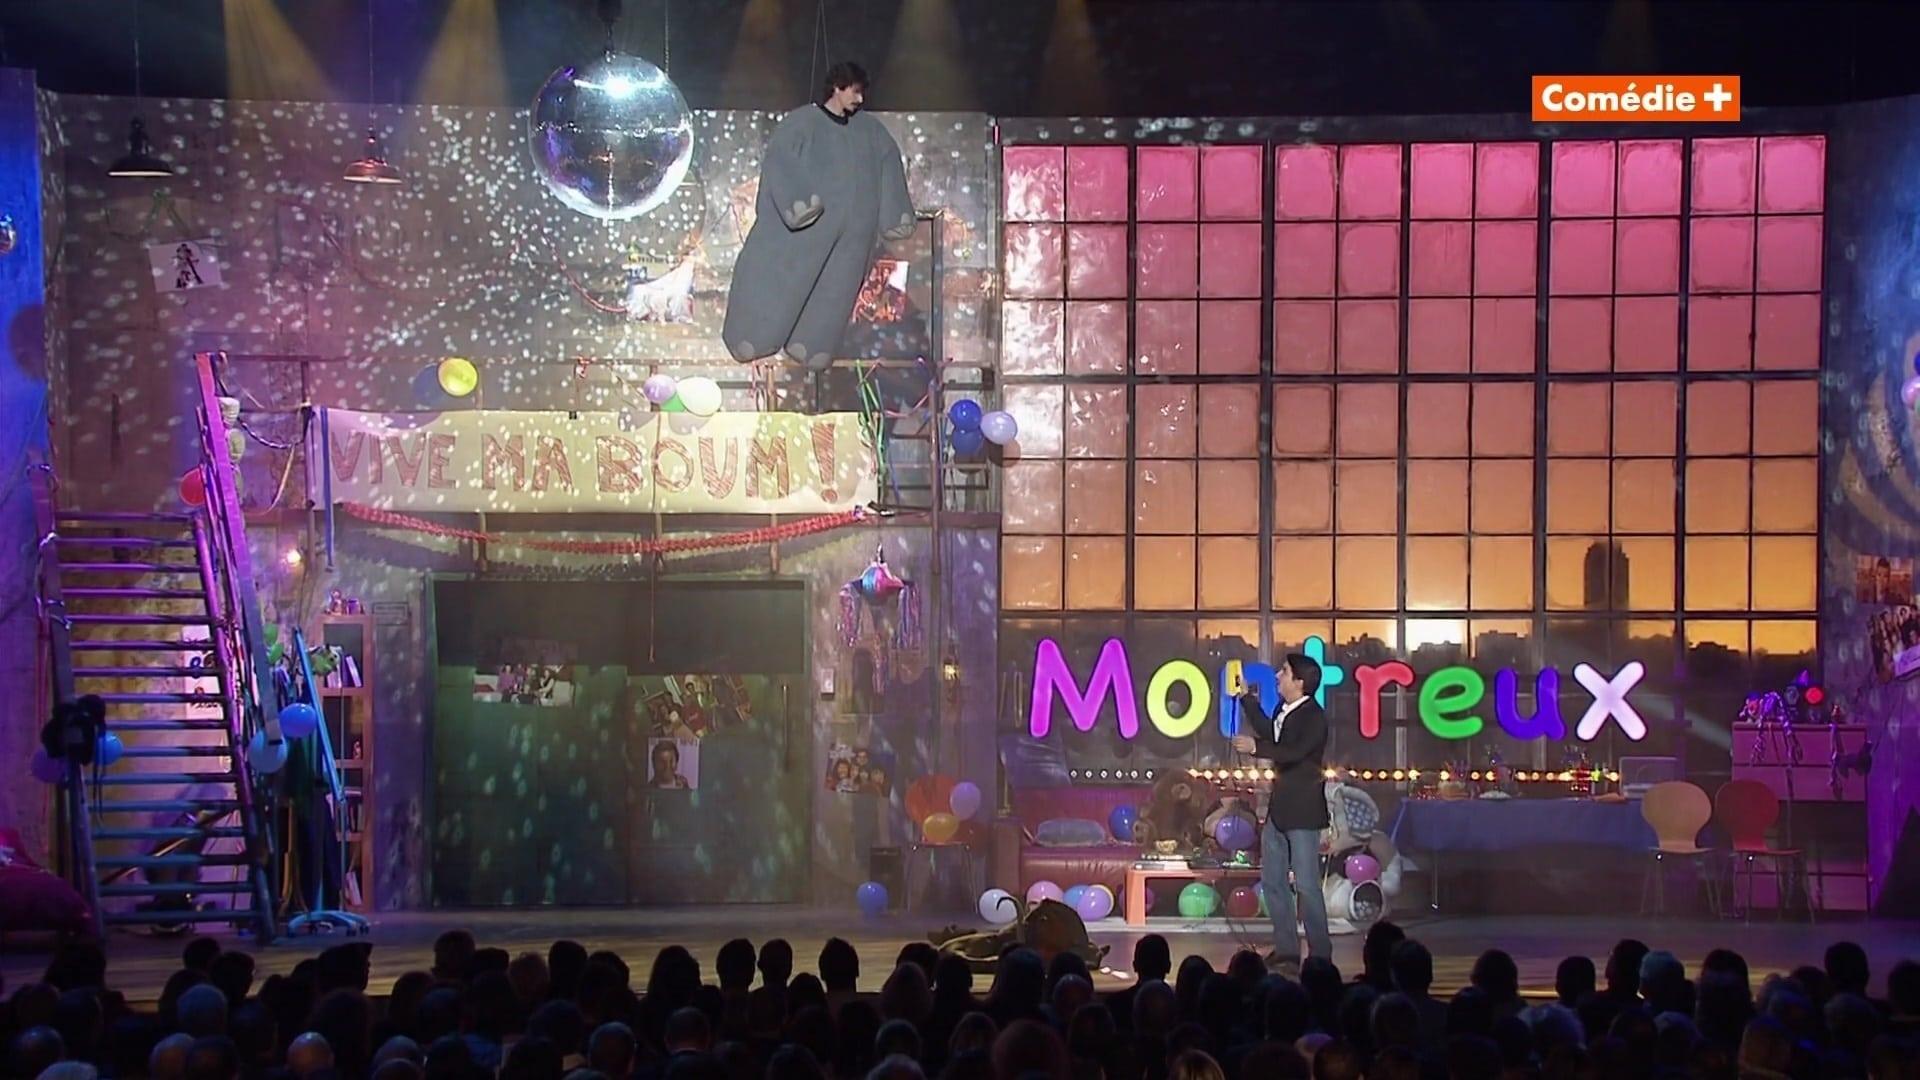 Montreux Comedy Festival 2014 - La Boum backdrop